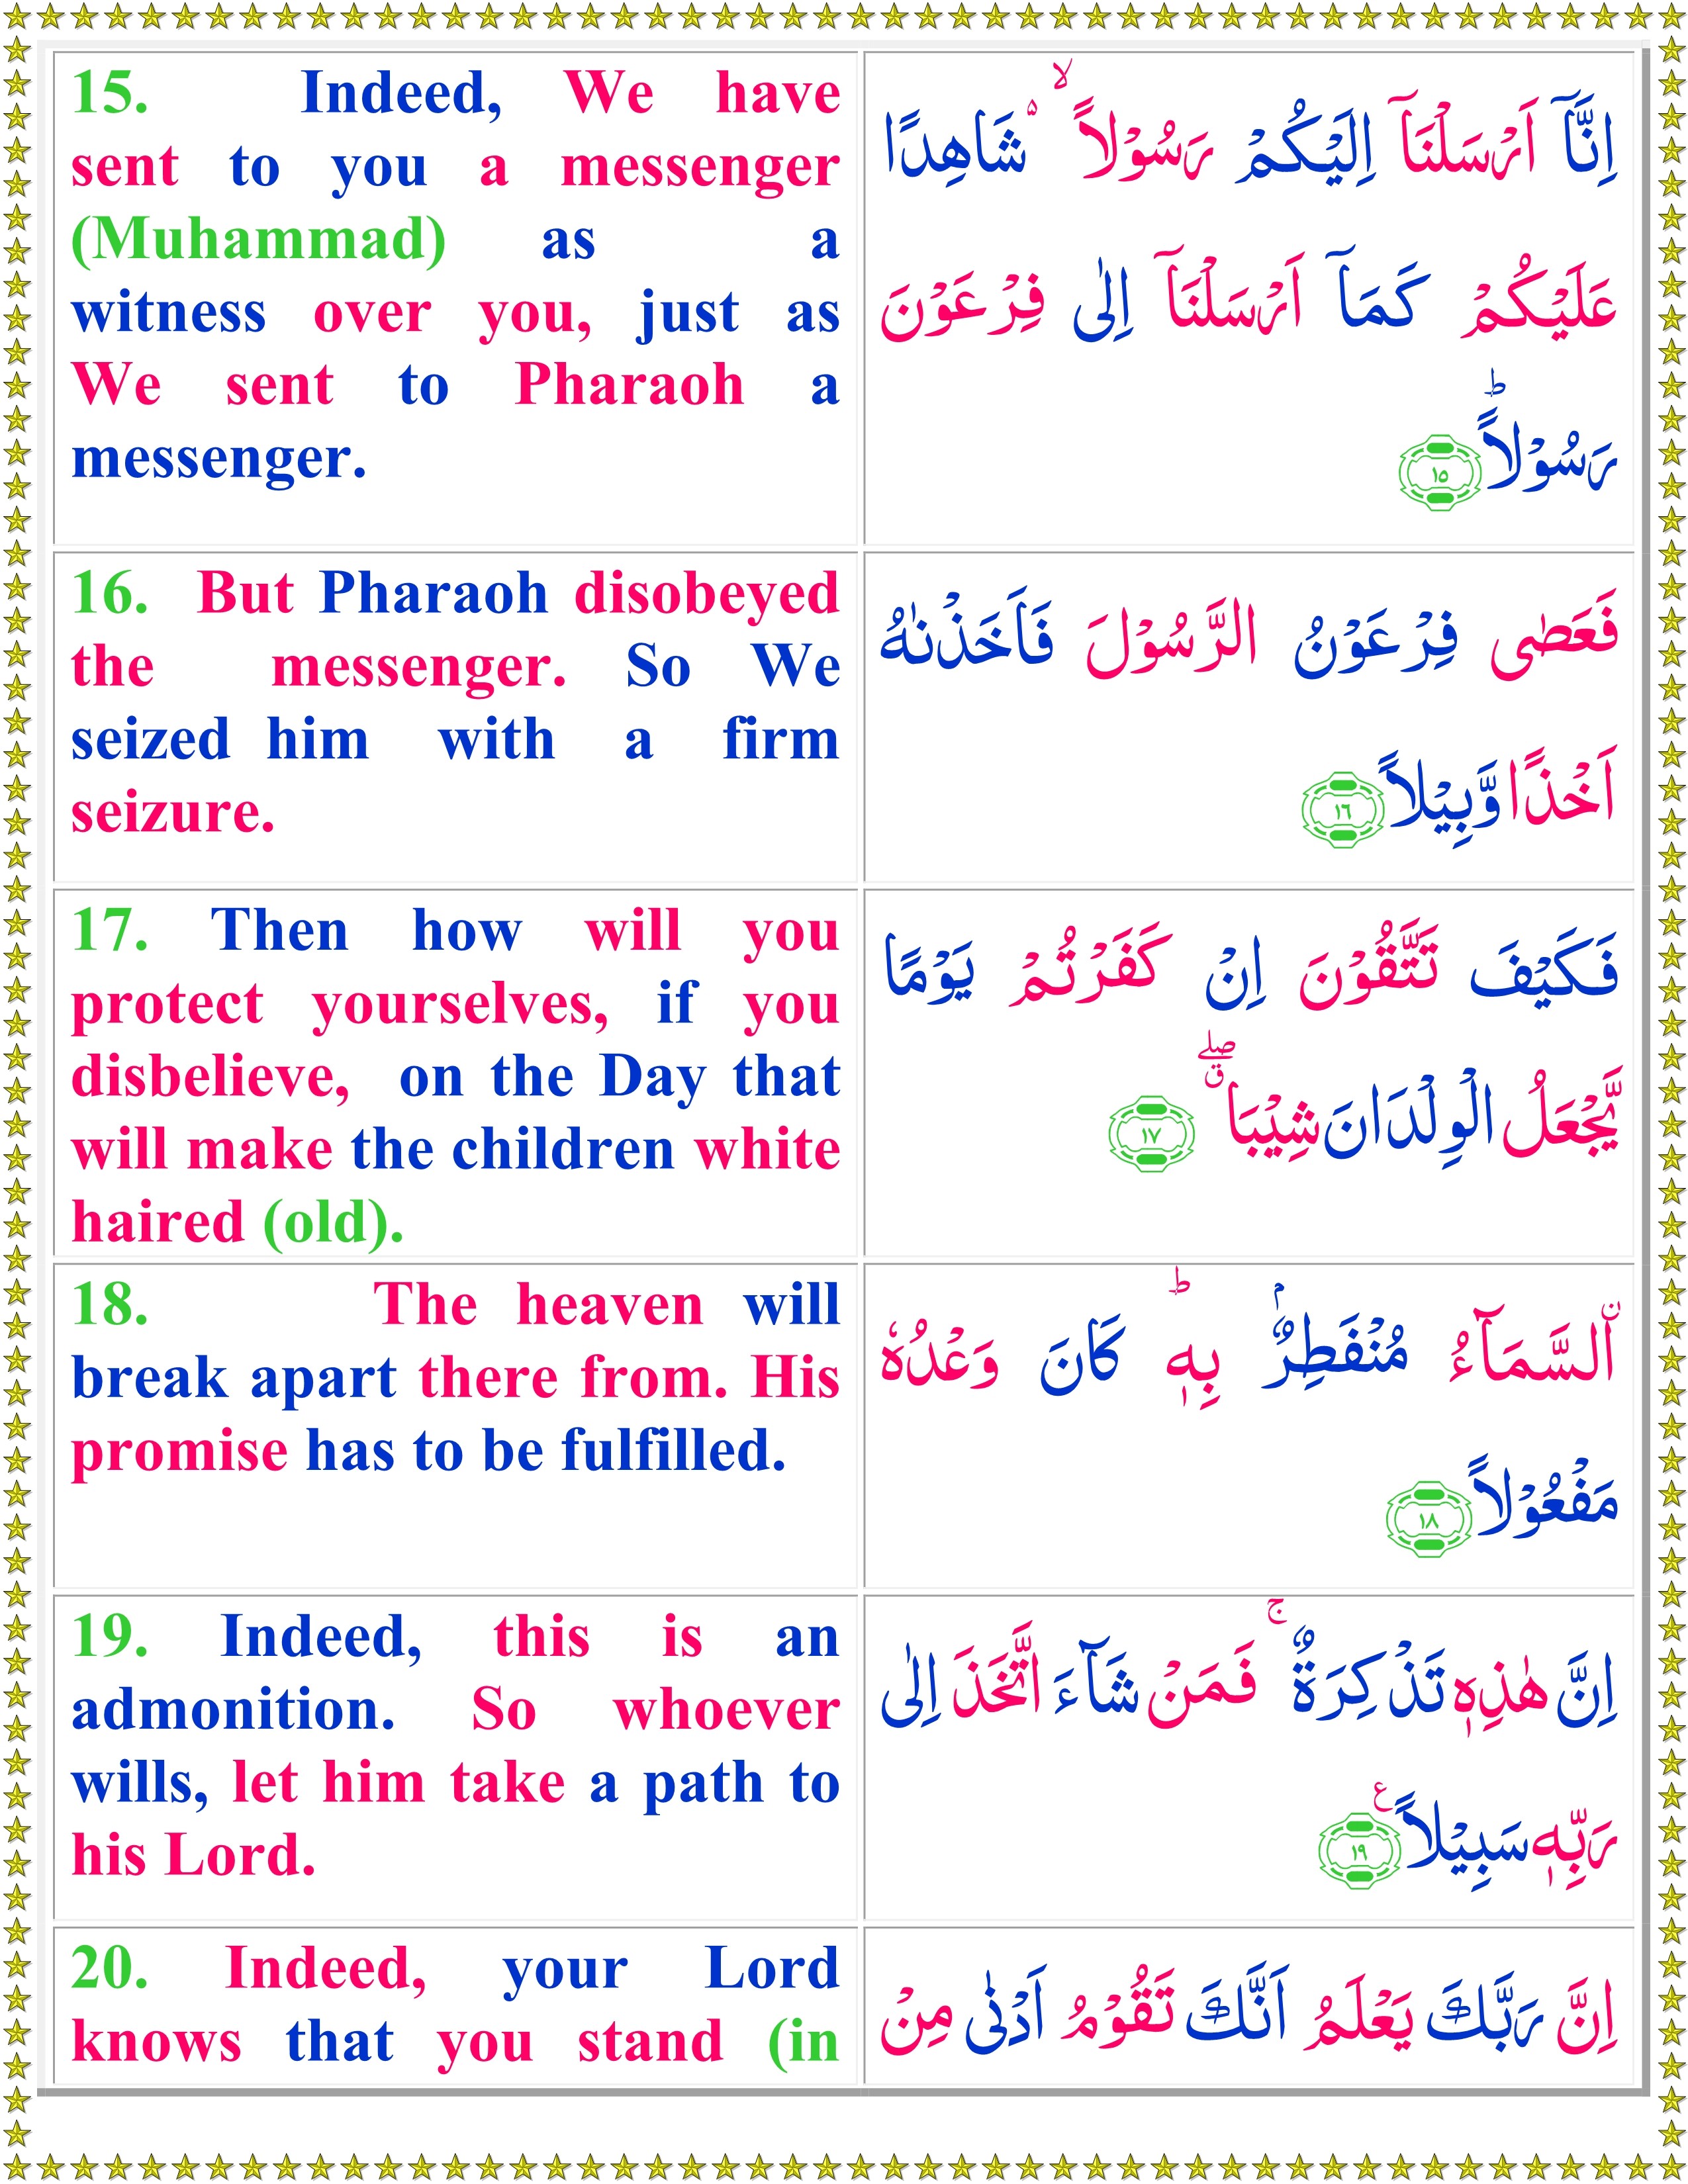 surah muzammil text in arabic